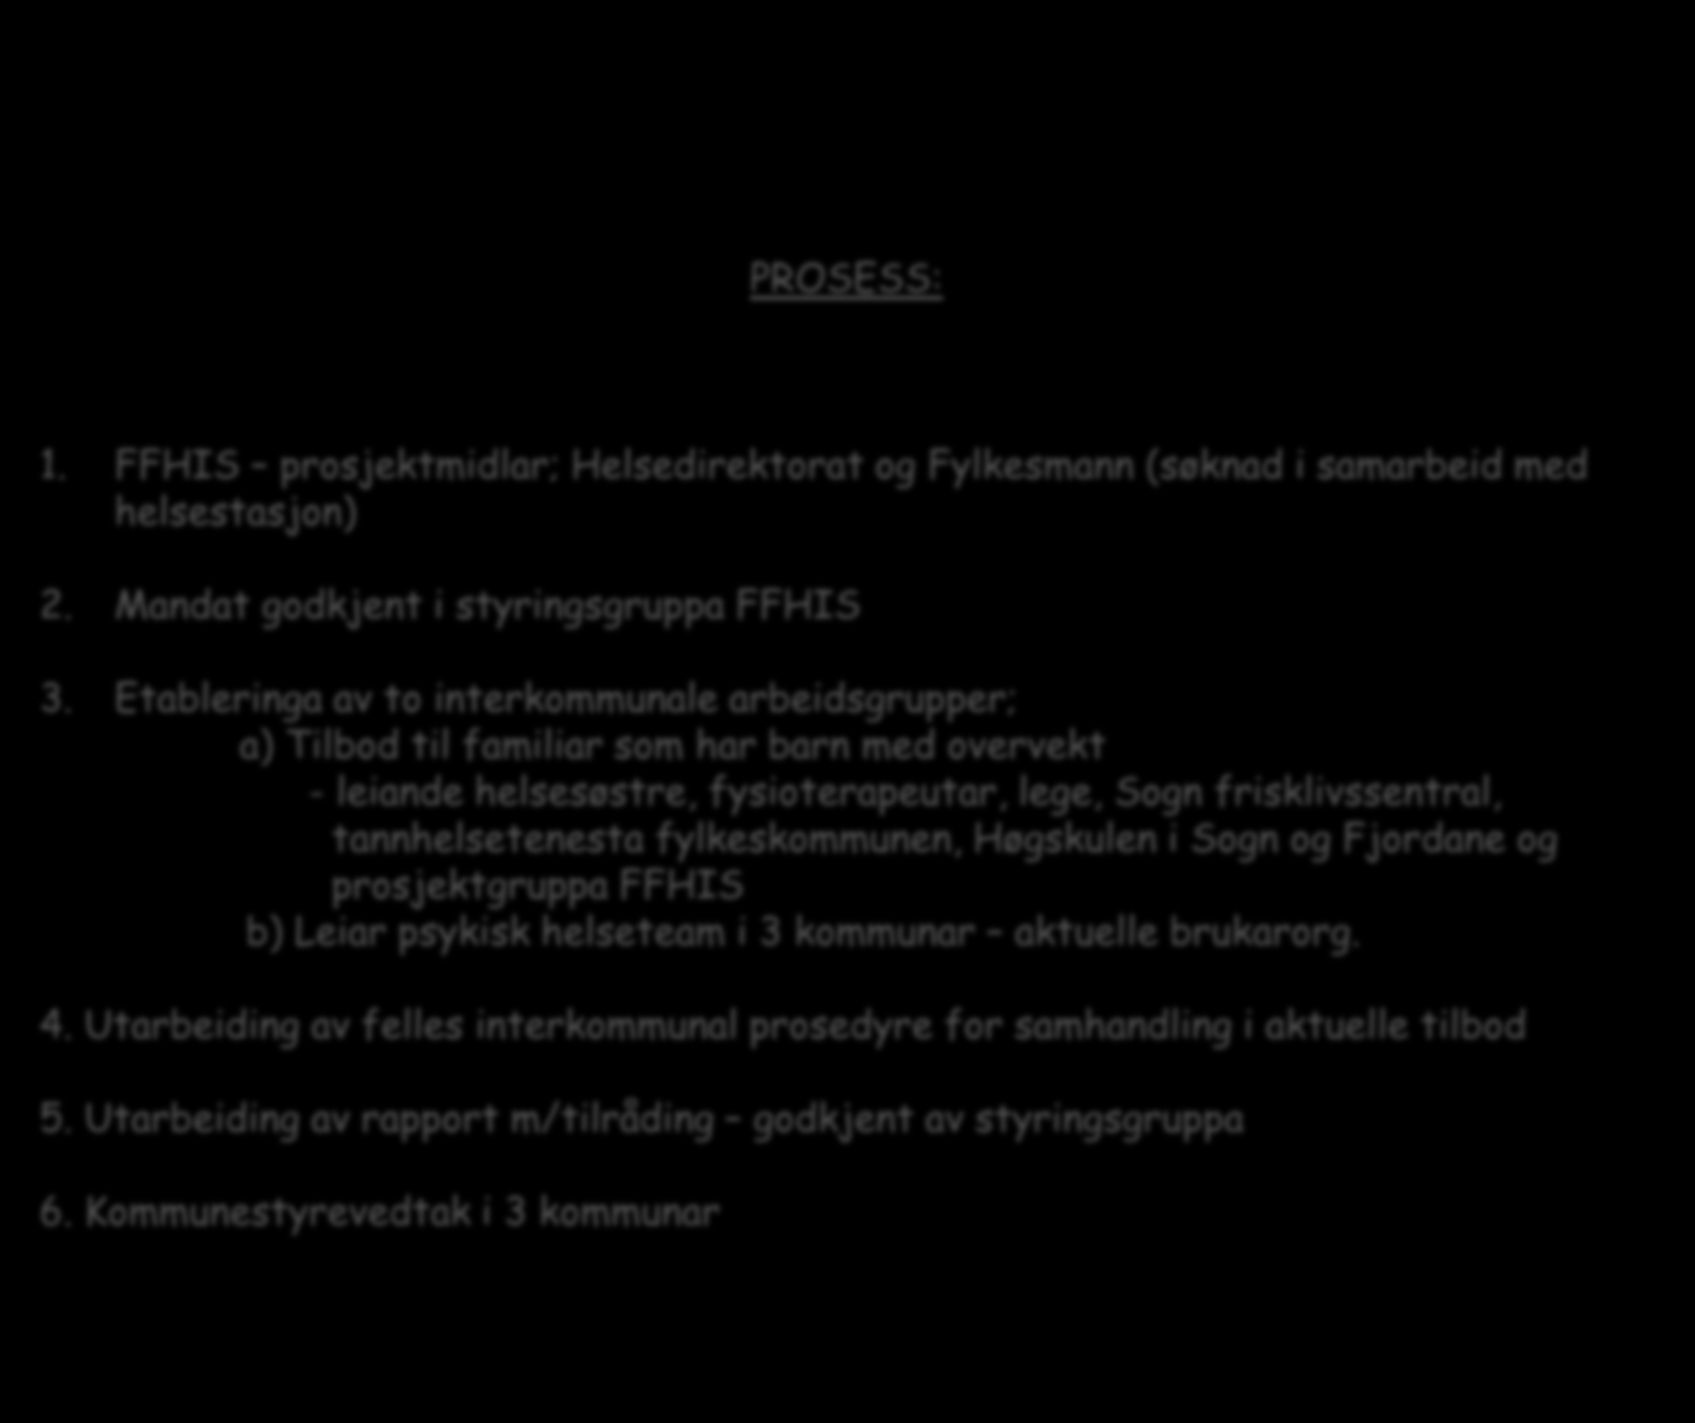 Lærings- og meistringstilbod i Luster, Leikanger og Sogndal PROSESS: 1. FFHIS prosjektmidlar; Helsedirektorat og Fylkesmann (søknad i samarbeid med helsestasjon) 2.